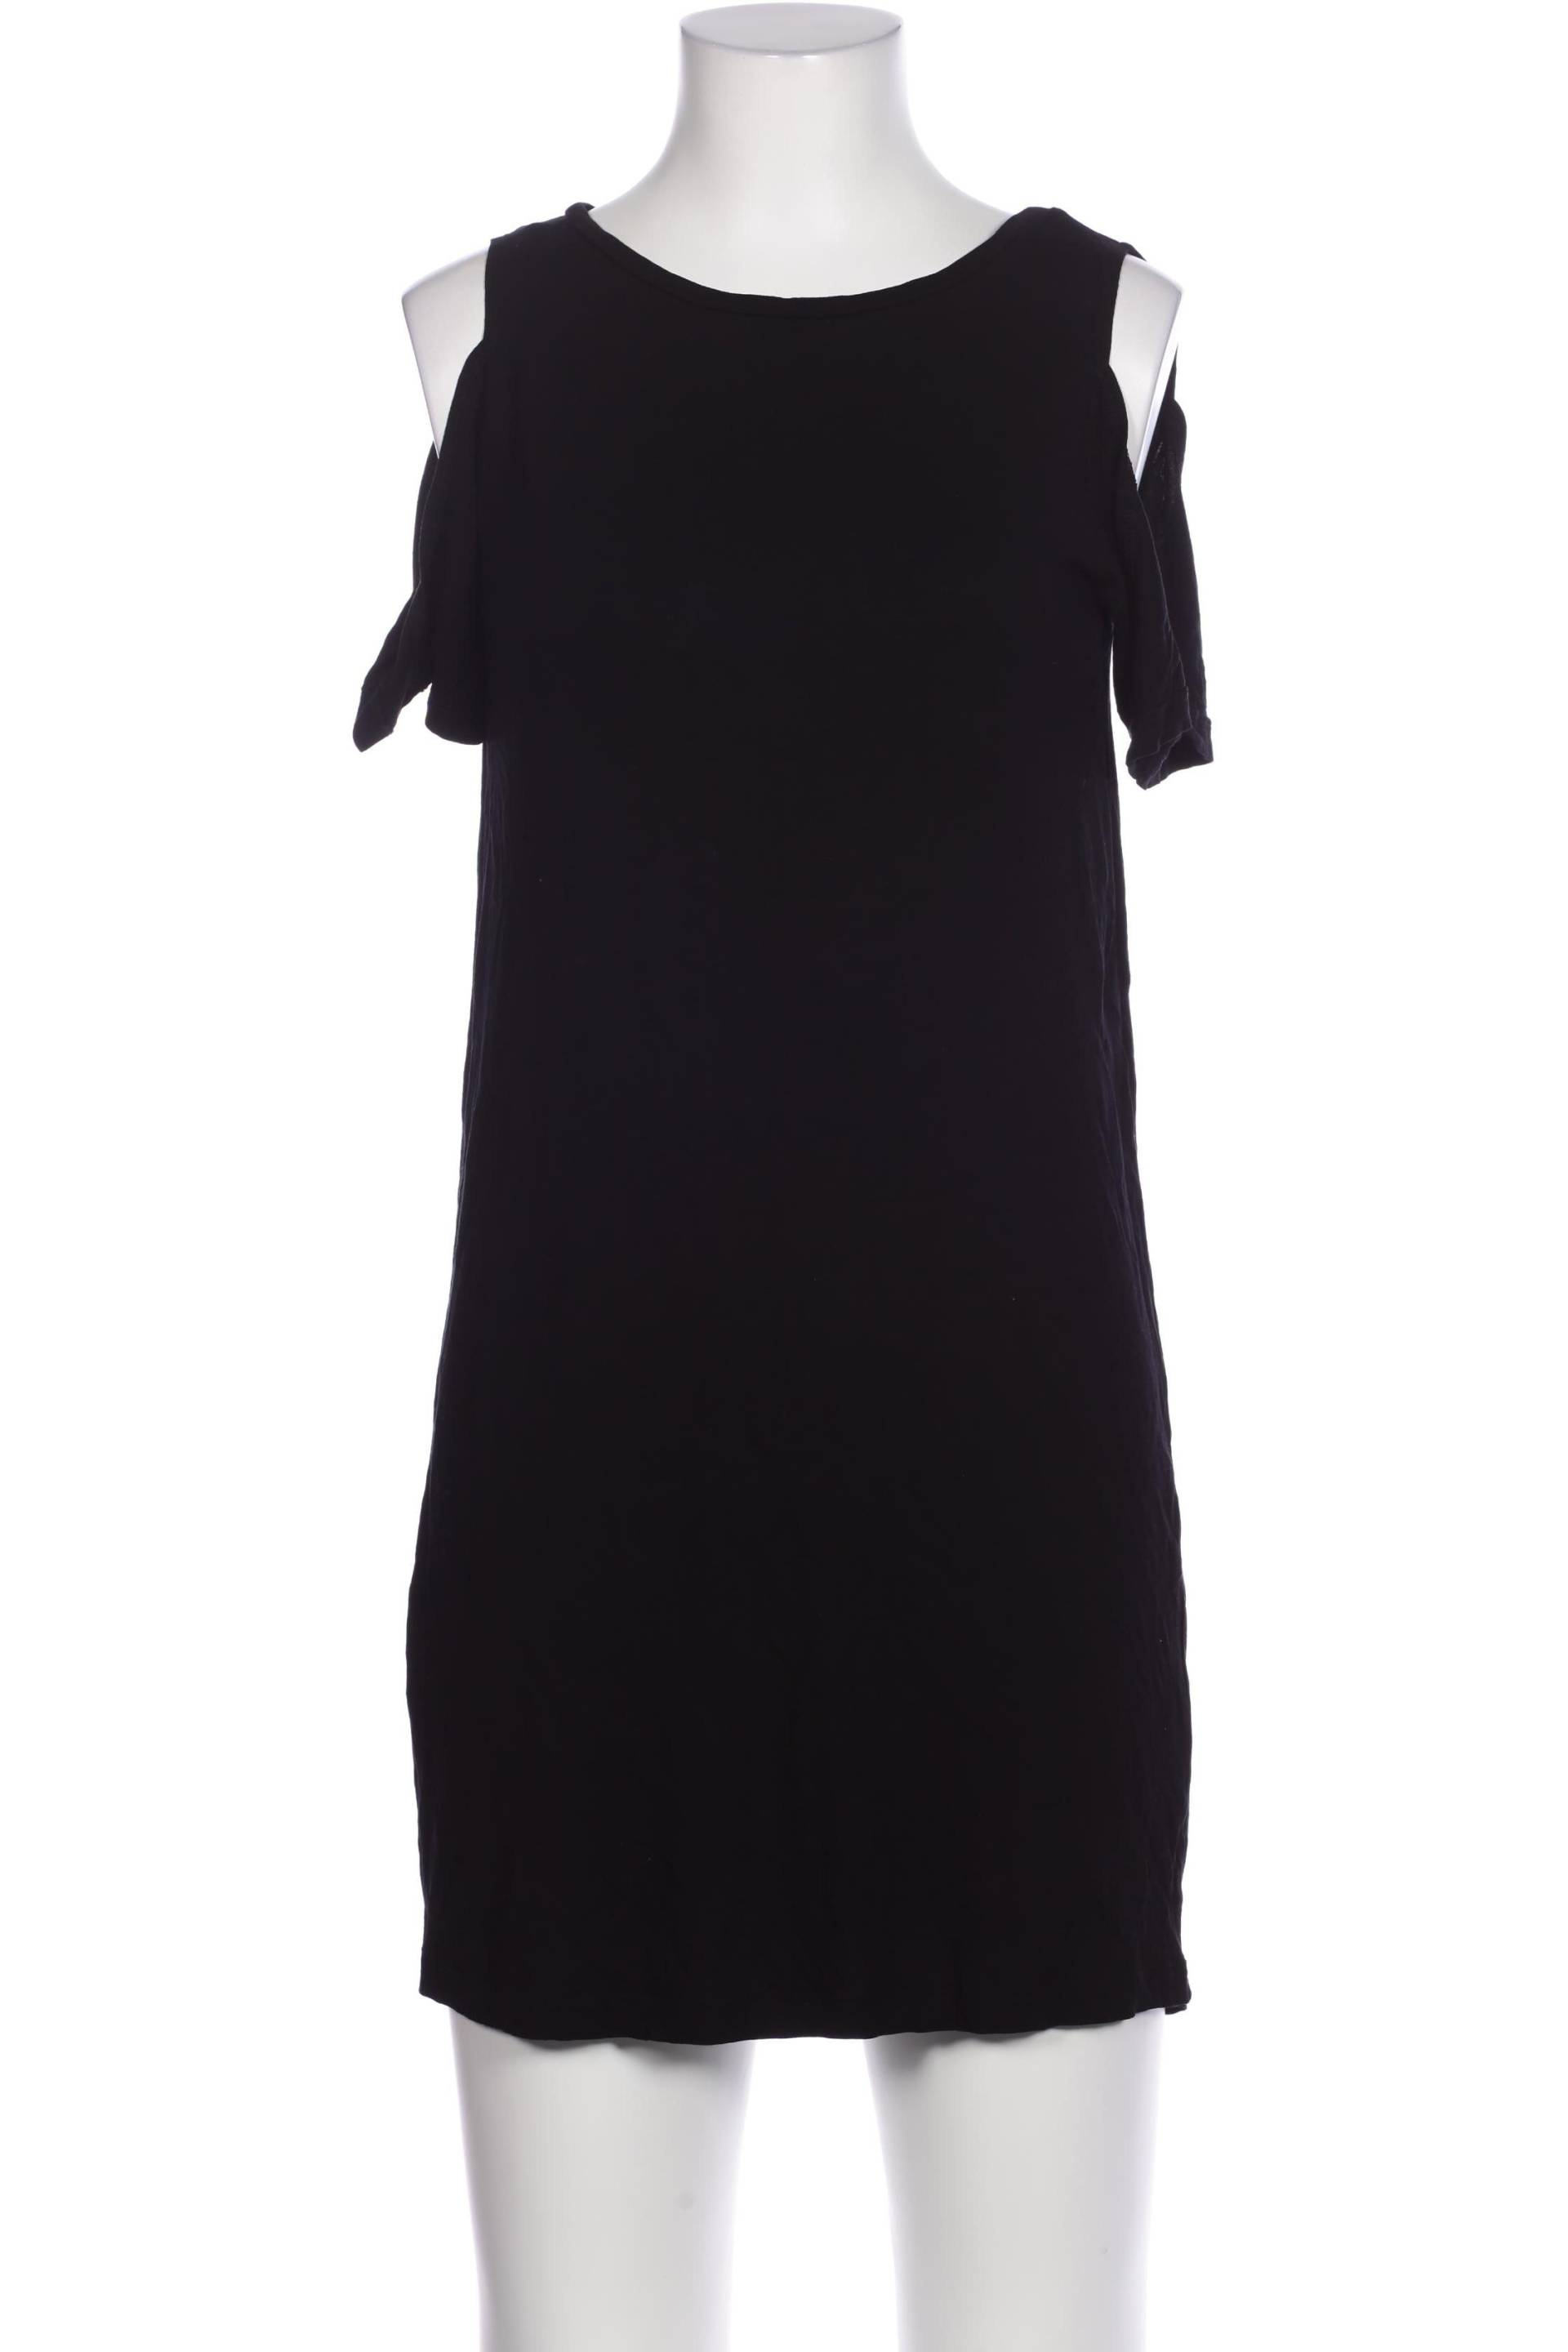 ZARA Damen Kleid, schwarz von ZARA